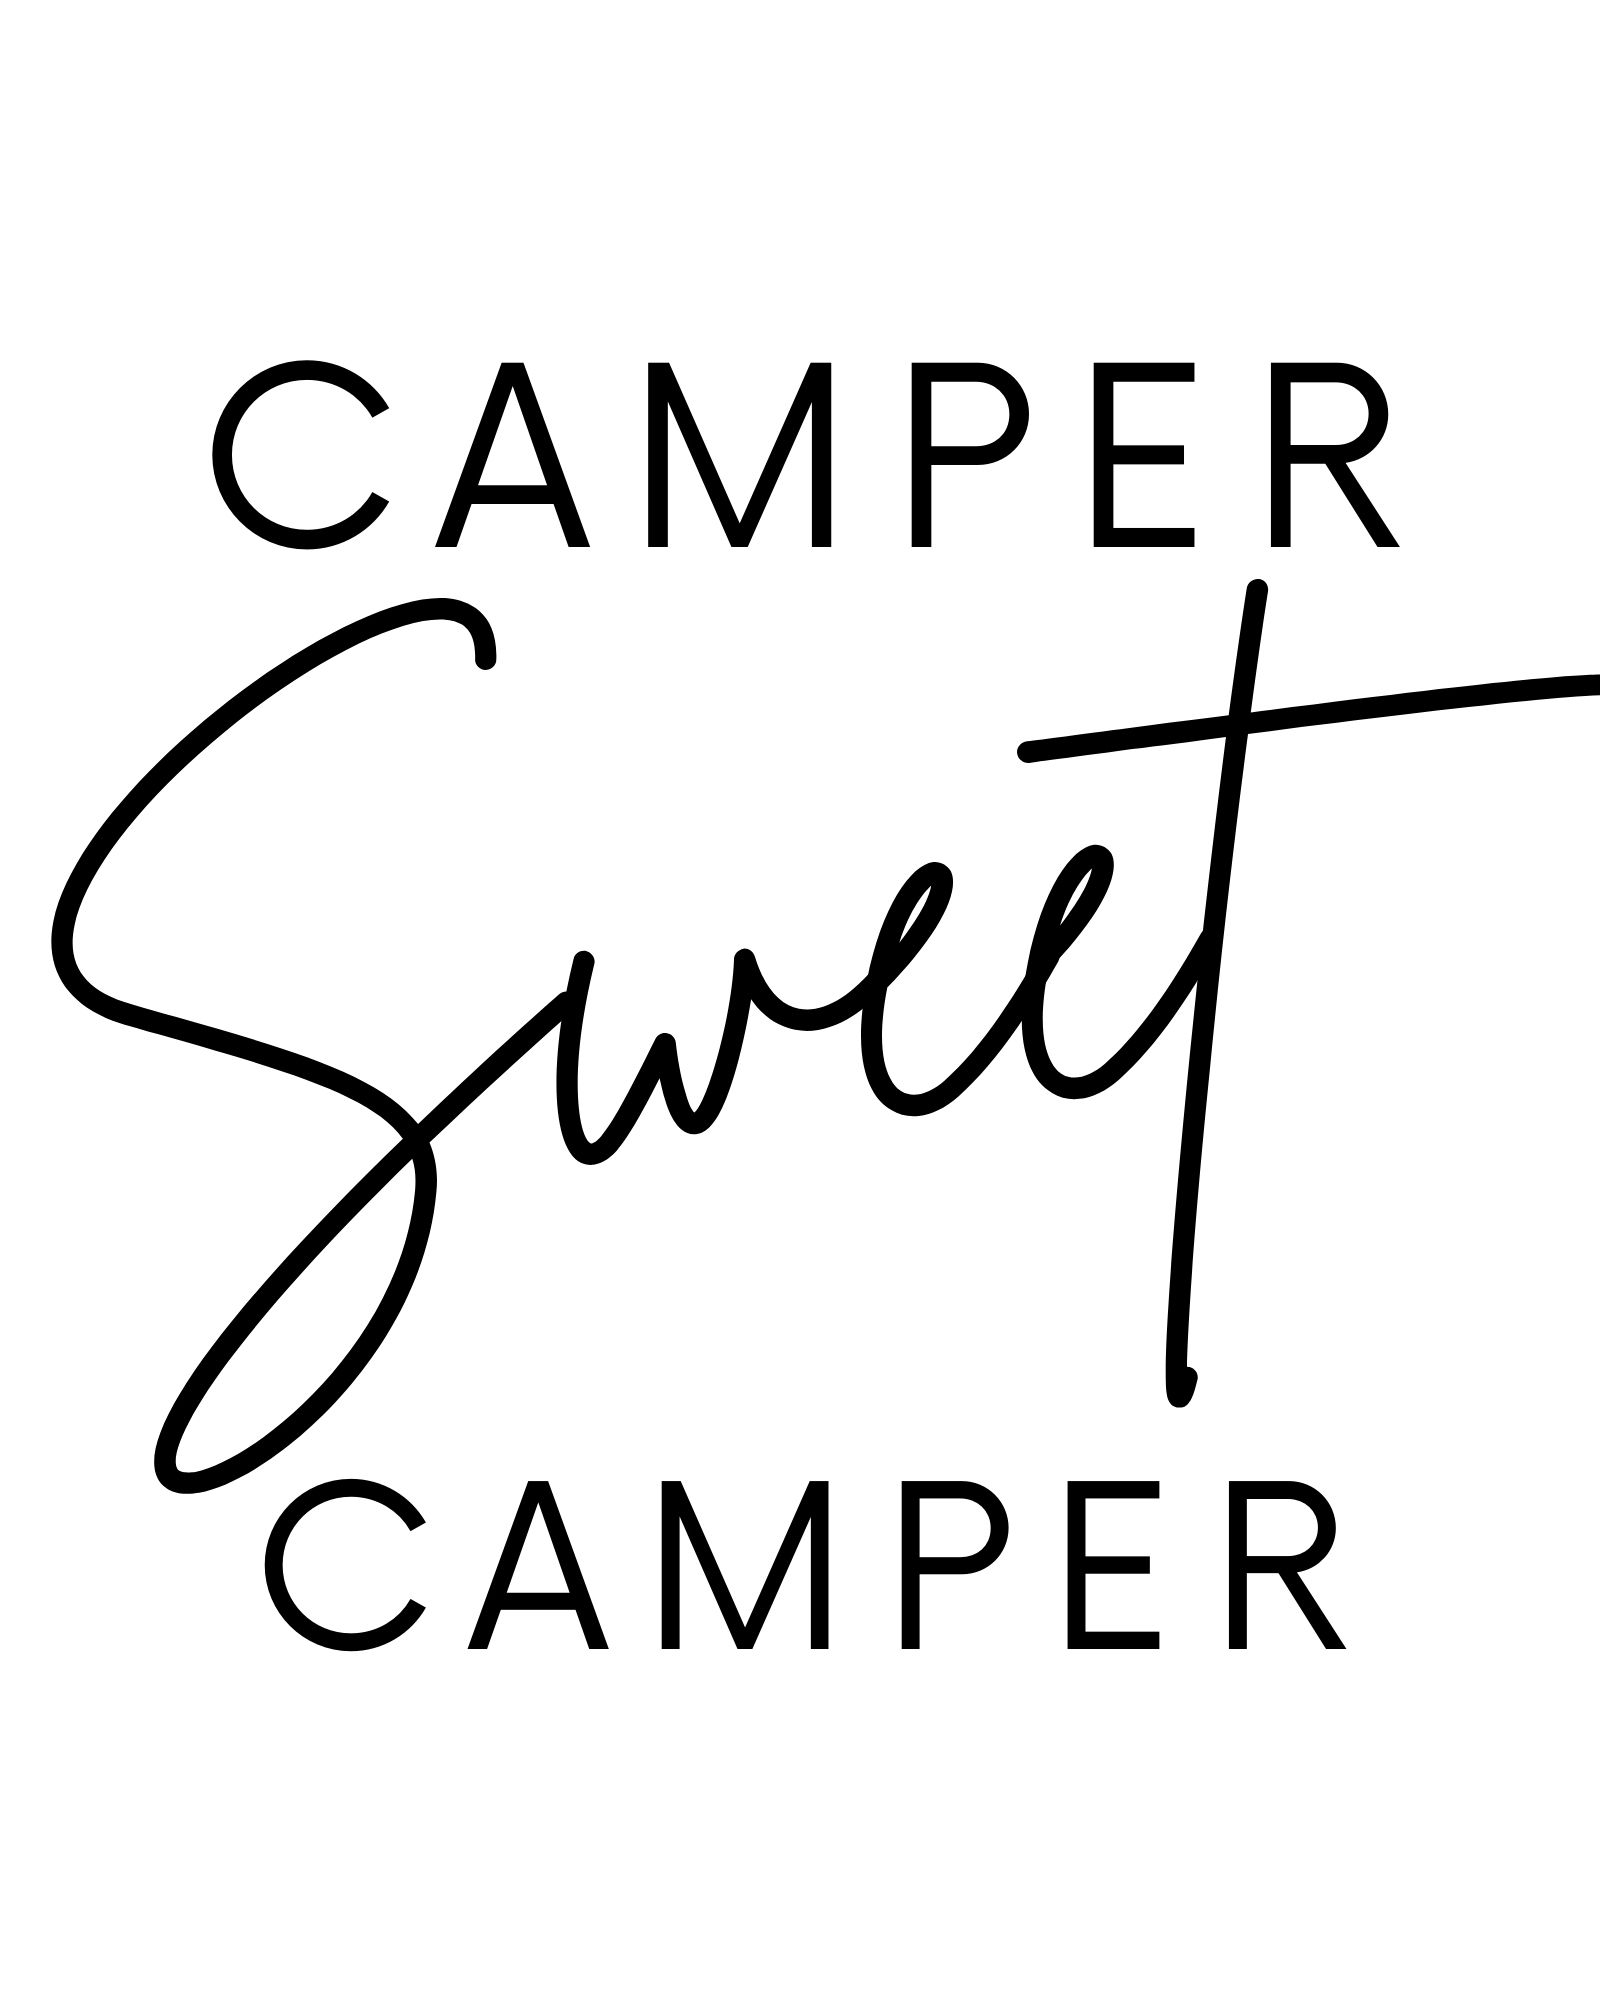 Camper sweet camper printable